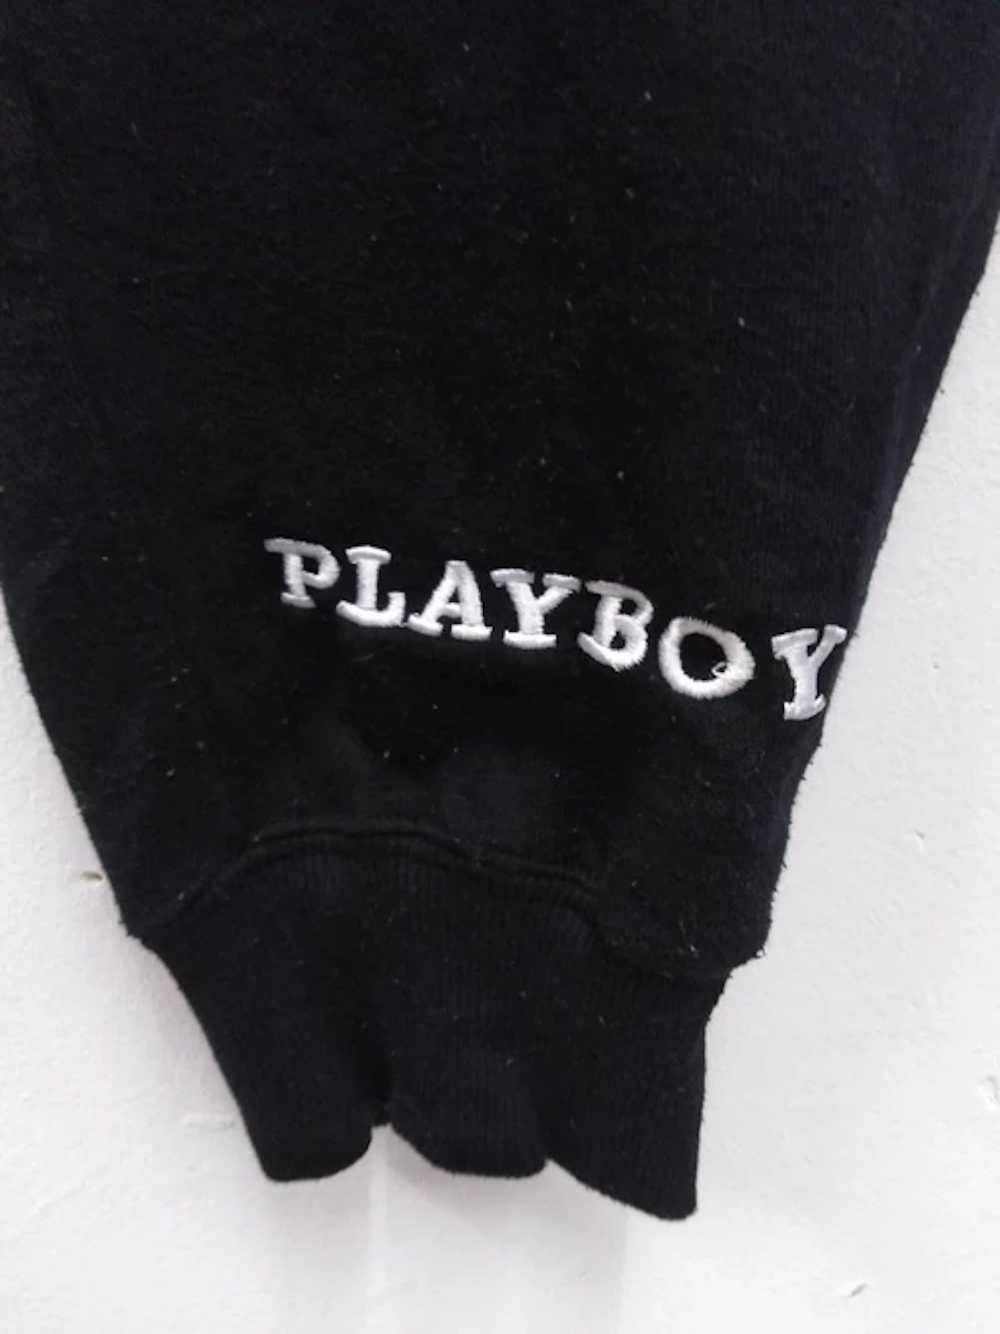 Playboy PLAYBOY JOGGERS PANTS BIG BUNNY STYLE - image 5